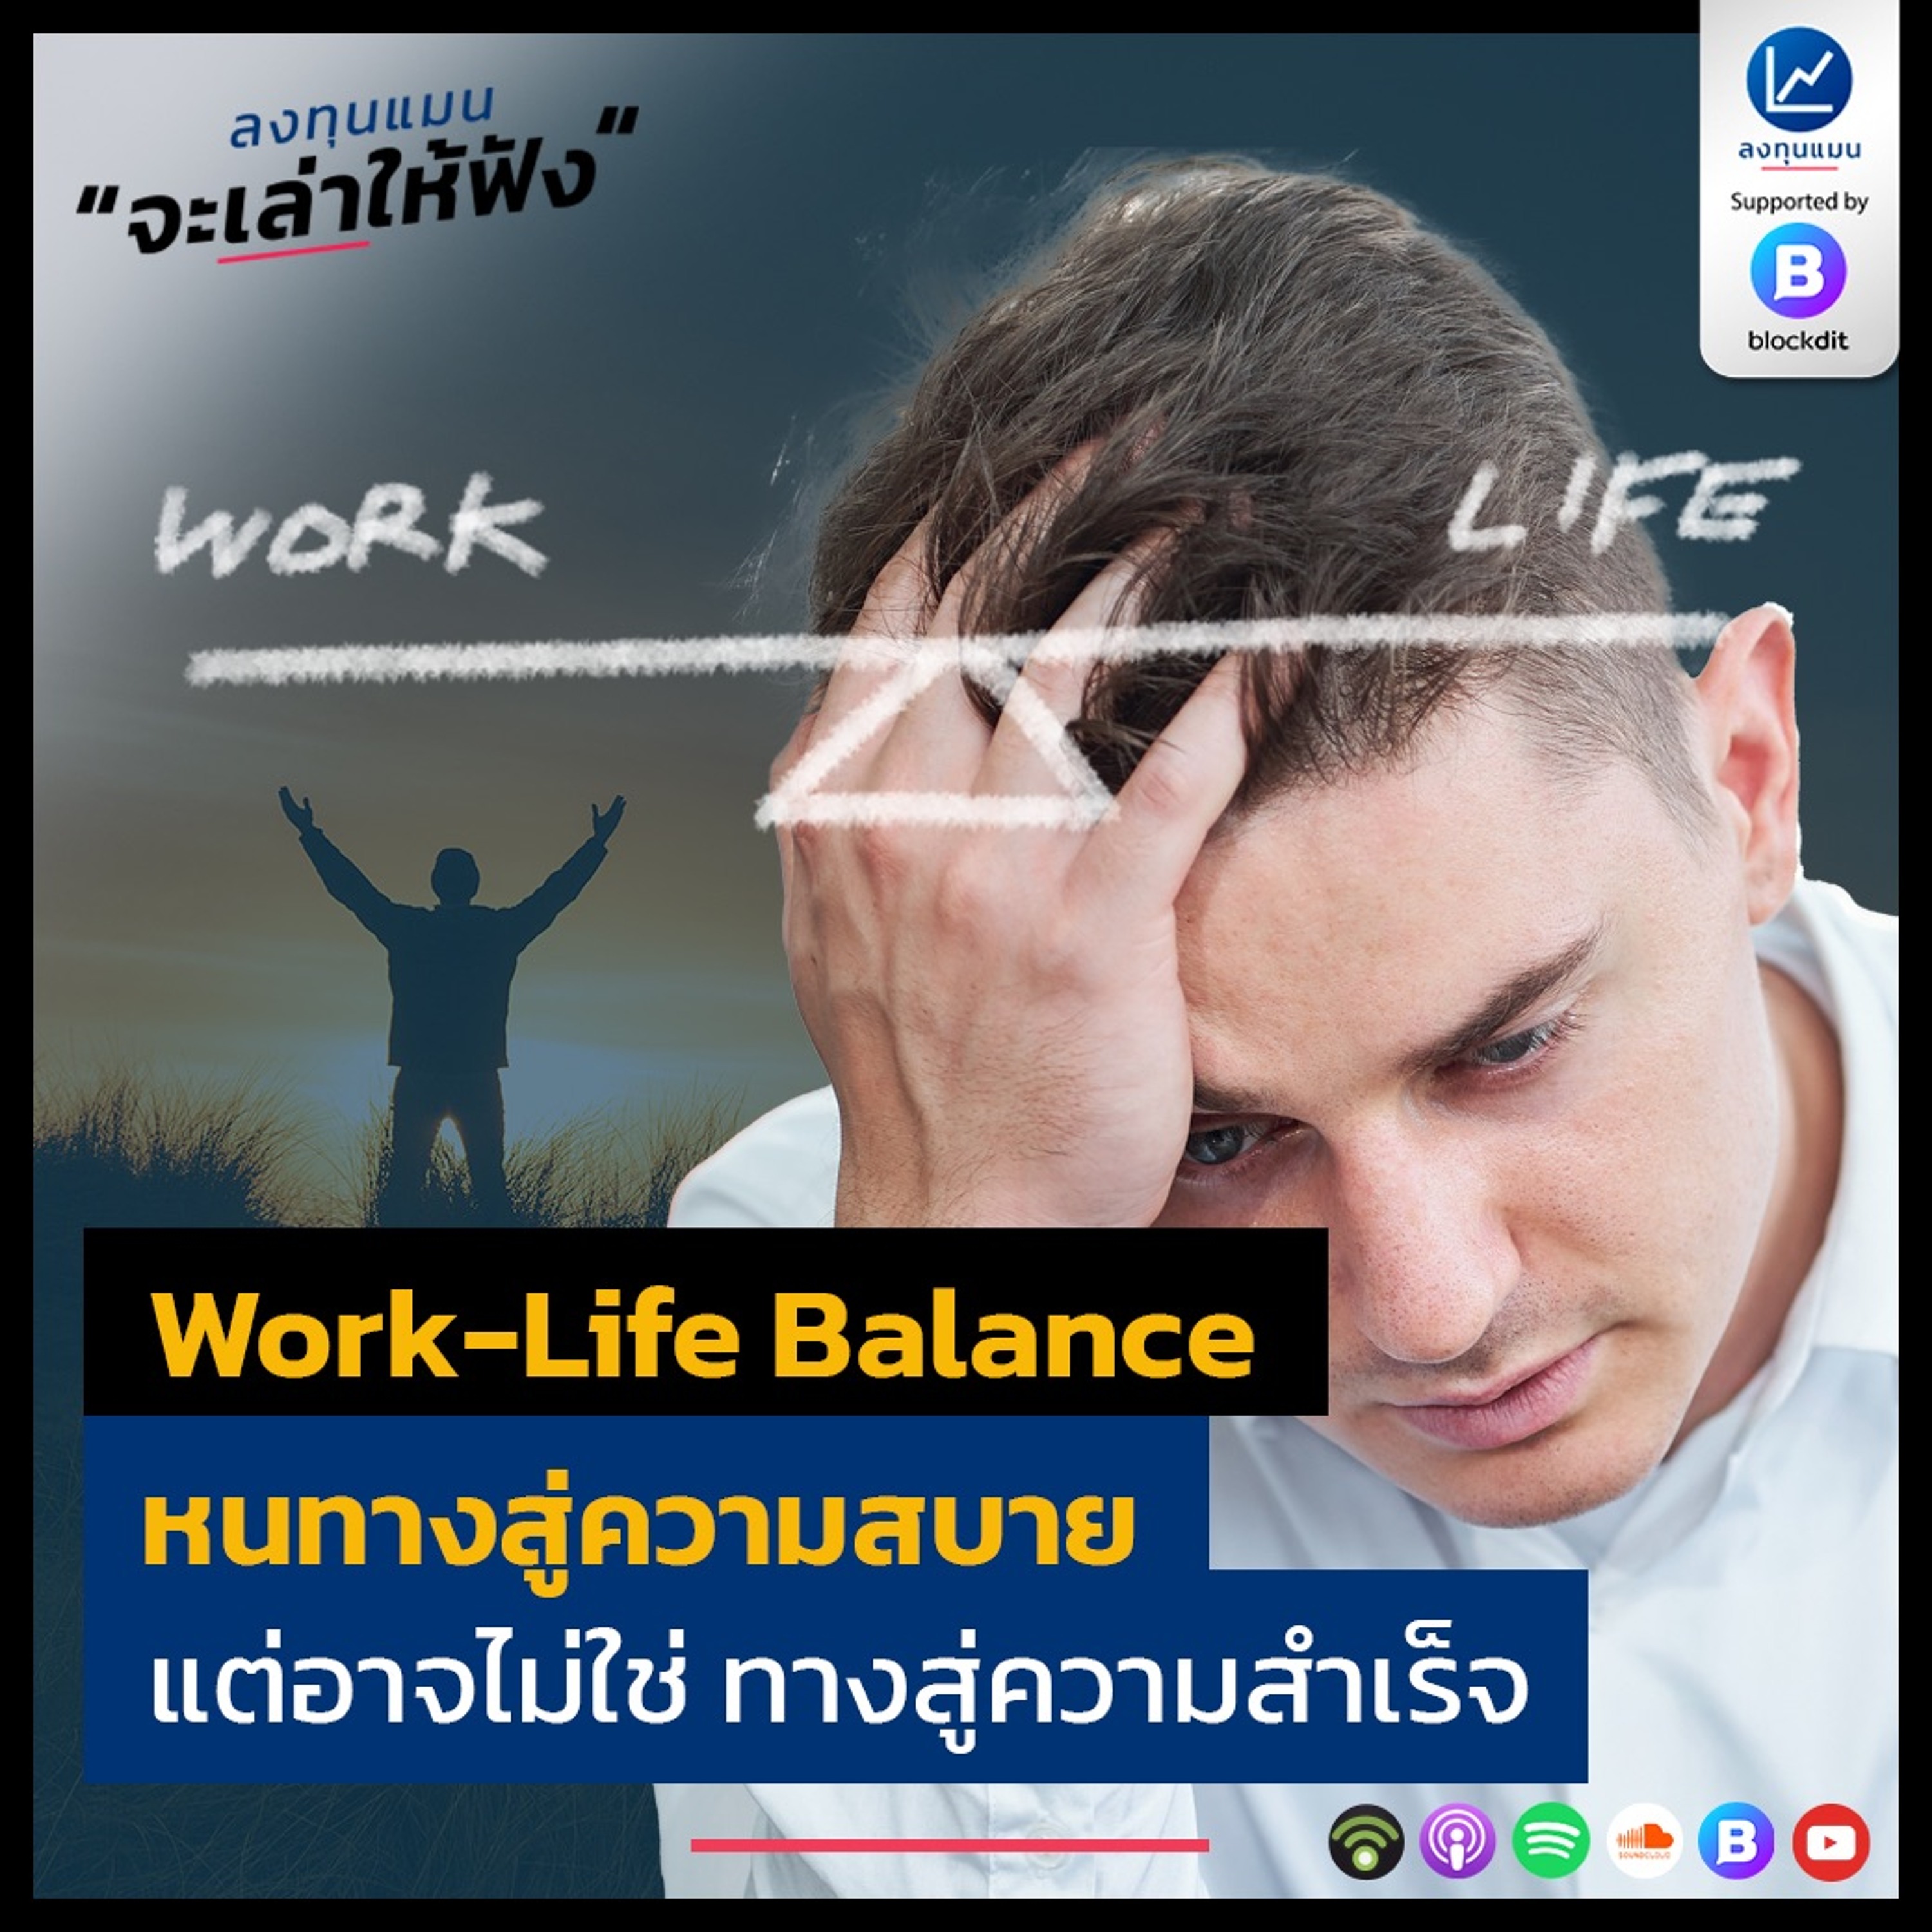 Work-Life Balance หนทางของความสบาย แต่อาจไม่ใช่ ทางสู่ความสำเร็จ